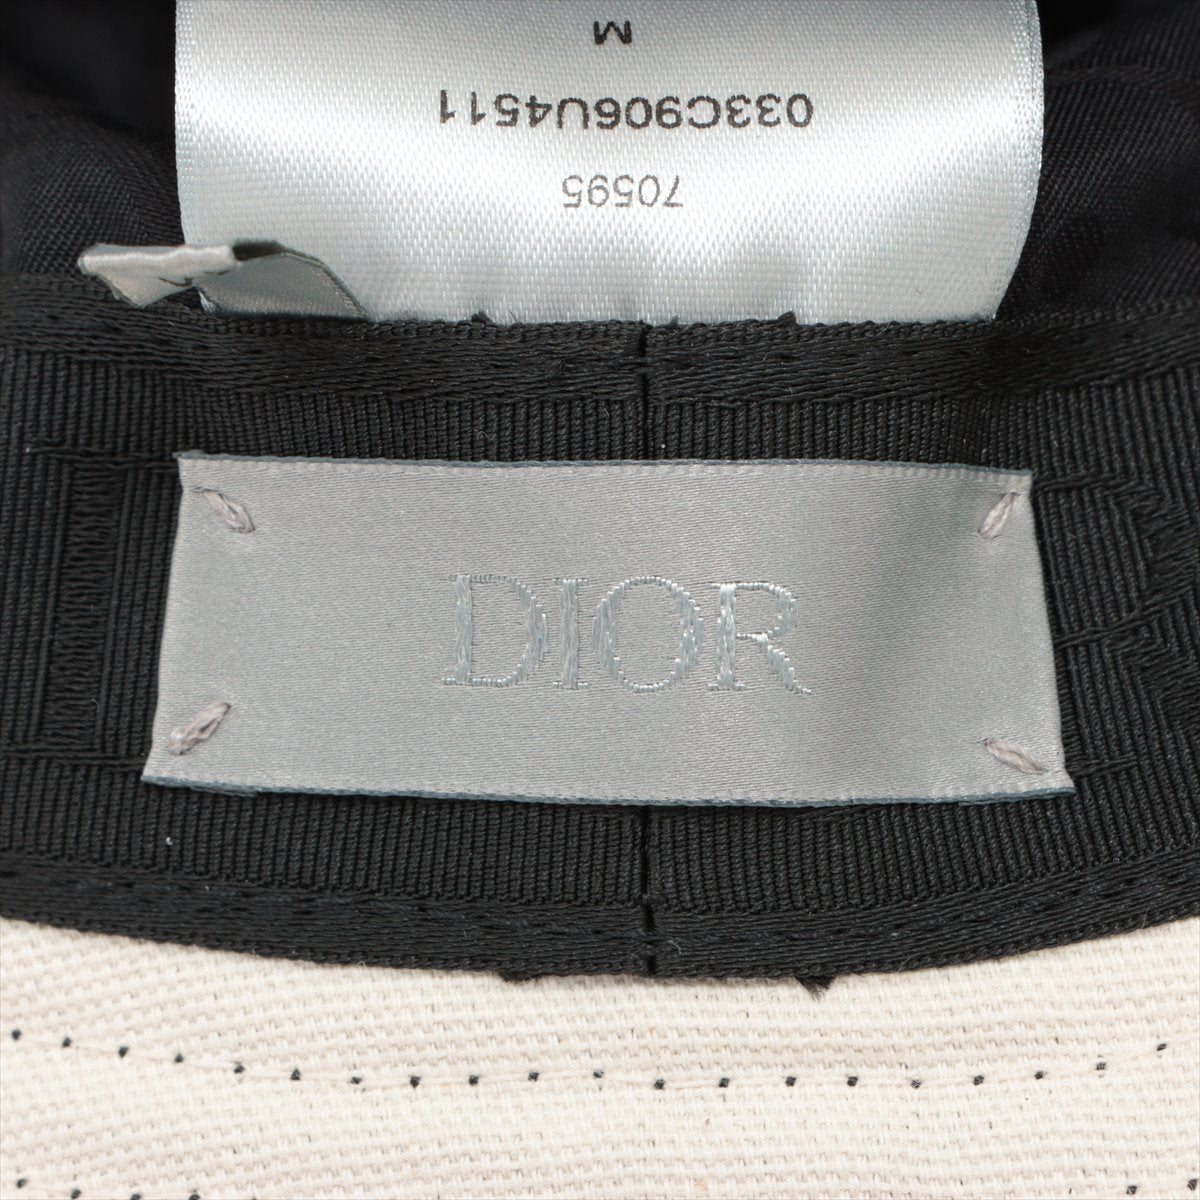 Dior x Travis Scott Hat Cotton Black